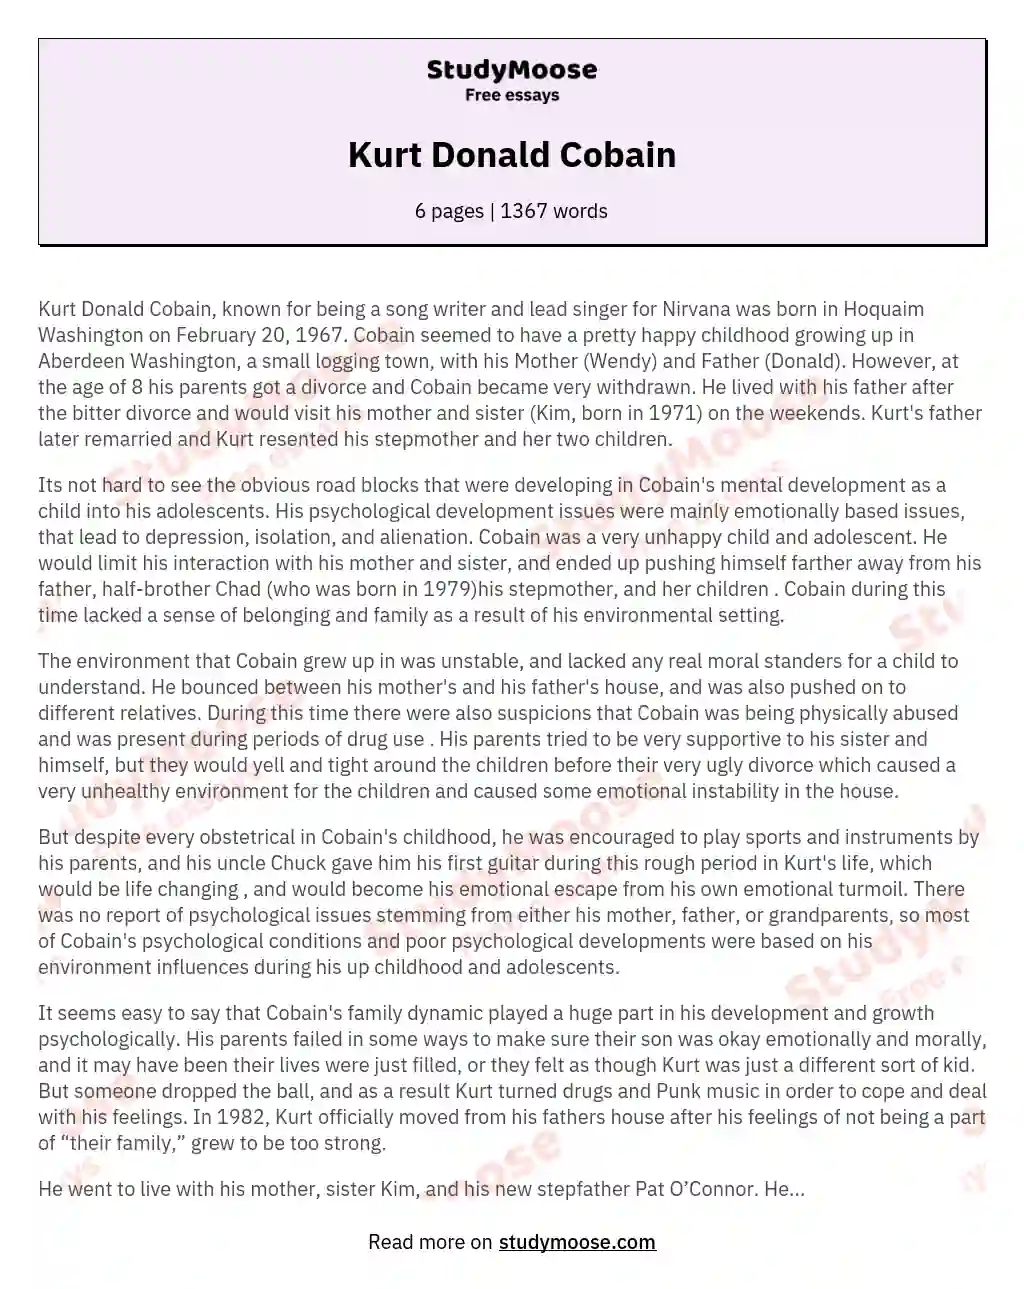 Kurt Donald Cobain essay